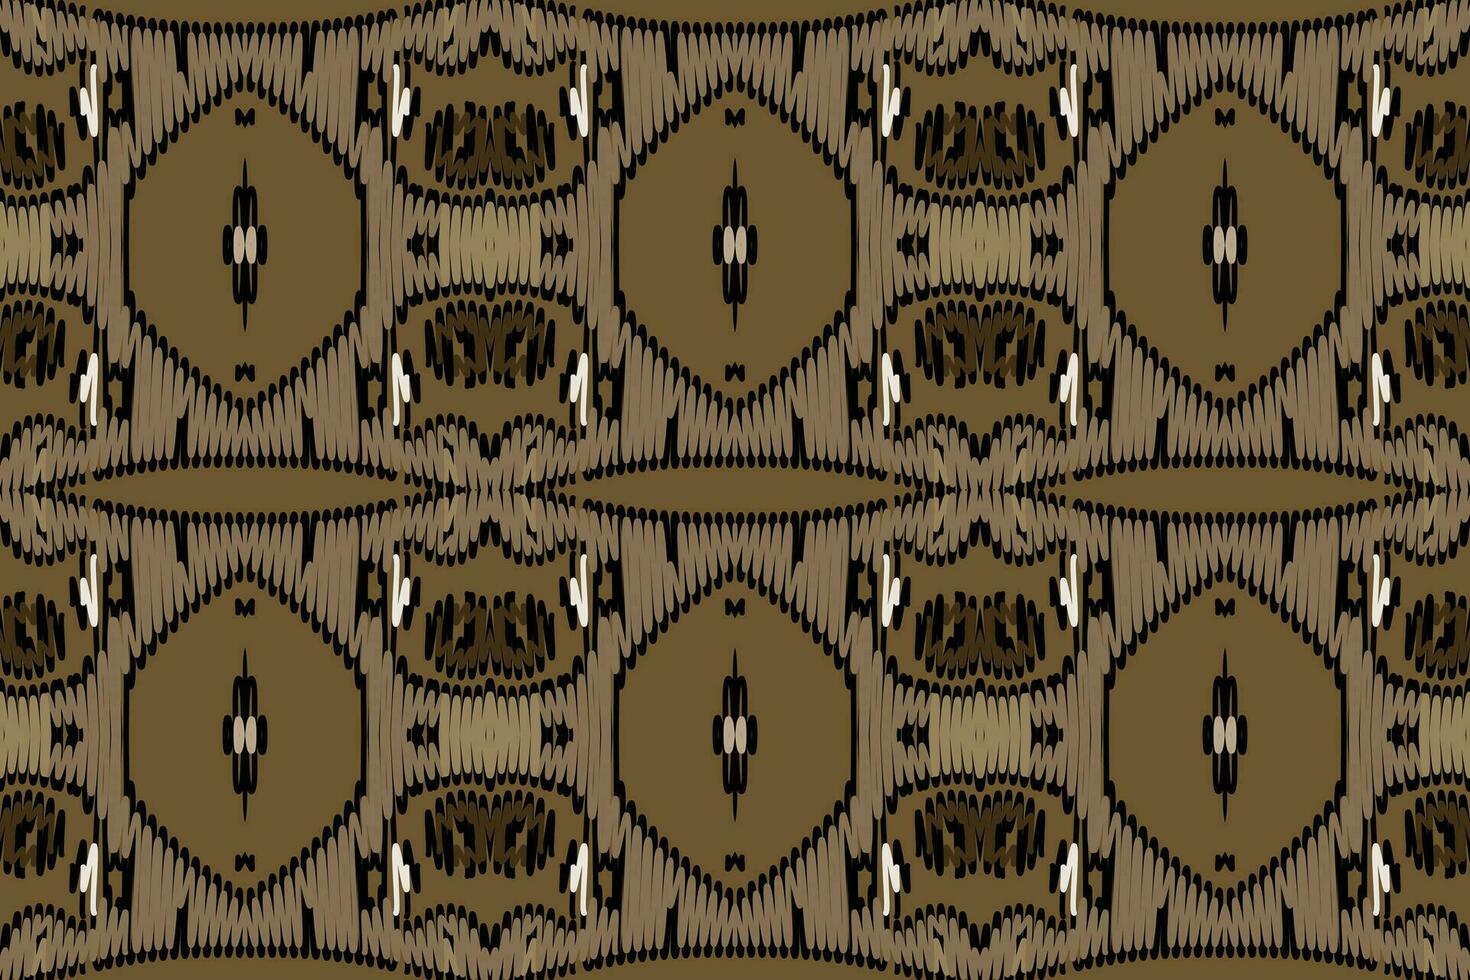 Krawatte Farbstoff Muster nahtlos australisch Ureinwohner Muster Motiv Stickerei, Ikat Stickerei Vektor Design zum drucken skandinavisch Muster Saree ethnisch Geburt Zigeuner Muster